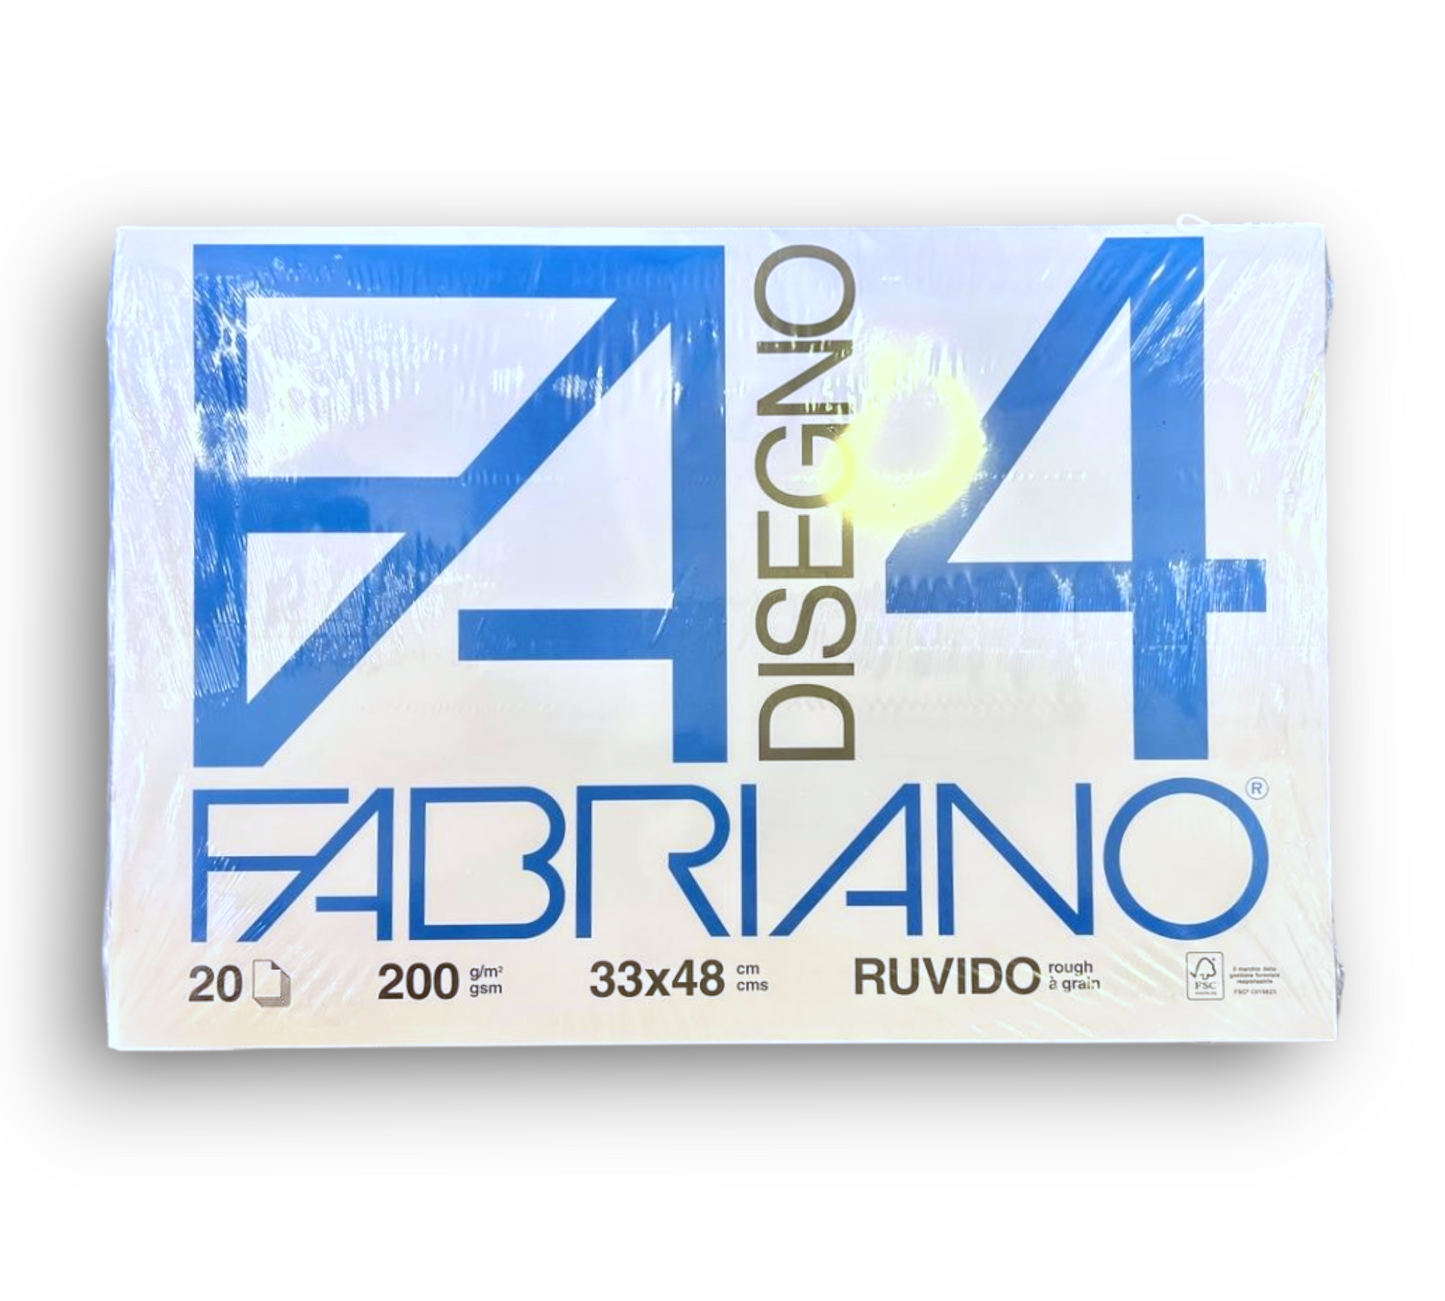 FABRIANO F4 - 33x48 220gr RUVIDO – Cartoleria Barbieri di Turelli Elena,  P.le San Domenico, 2 MODENA - P.I. 03148310364